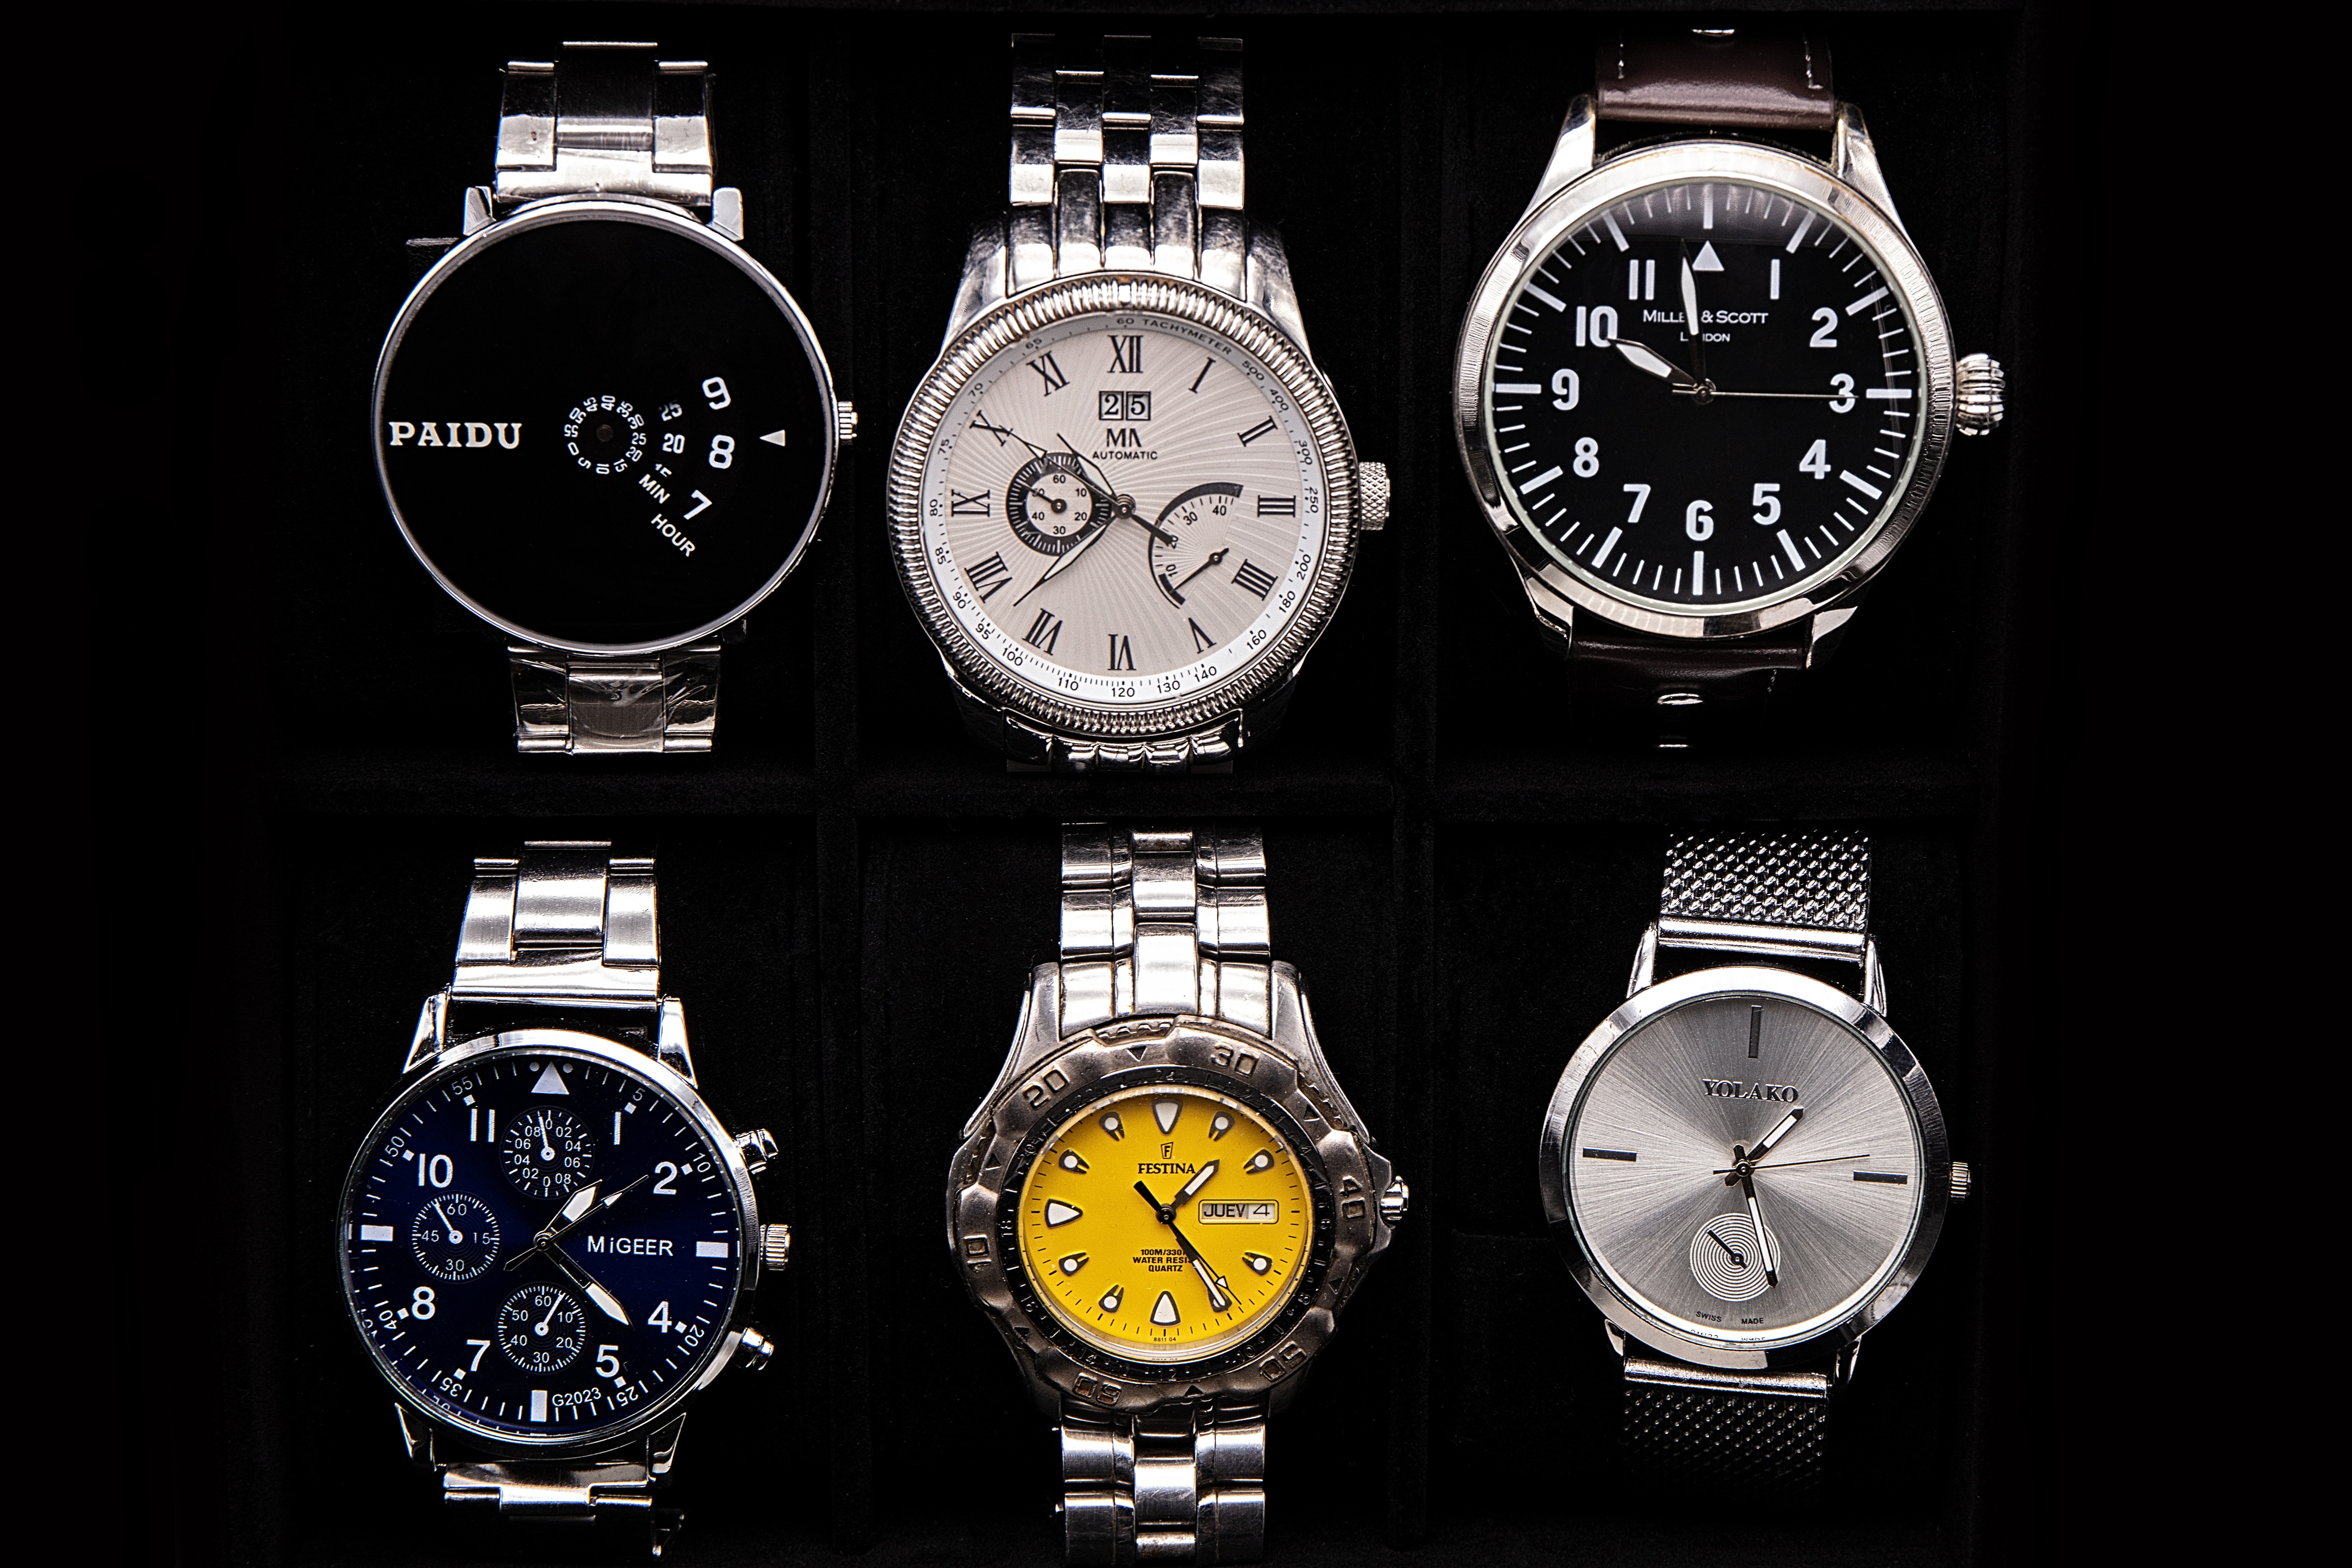 Tanie zegarki – styl i funkcjonalność bez wysokich kosztów